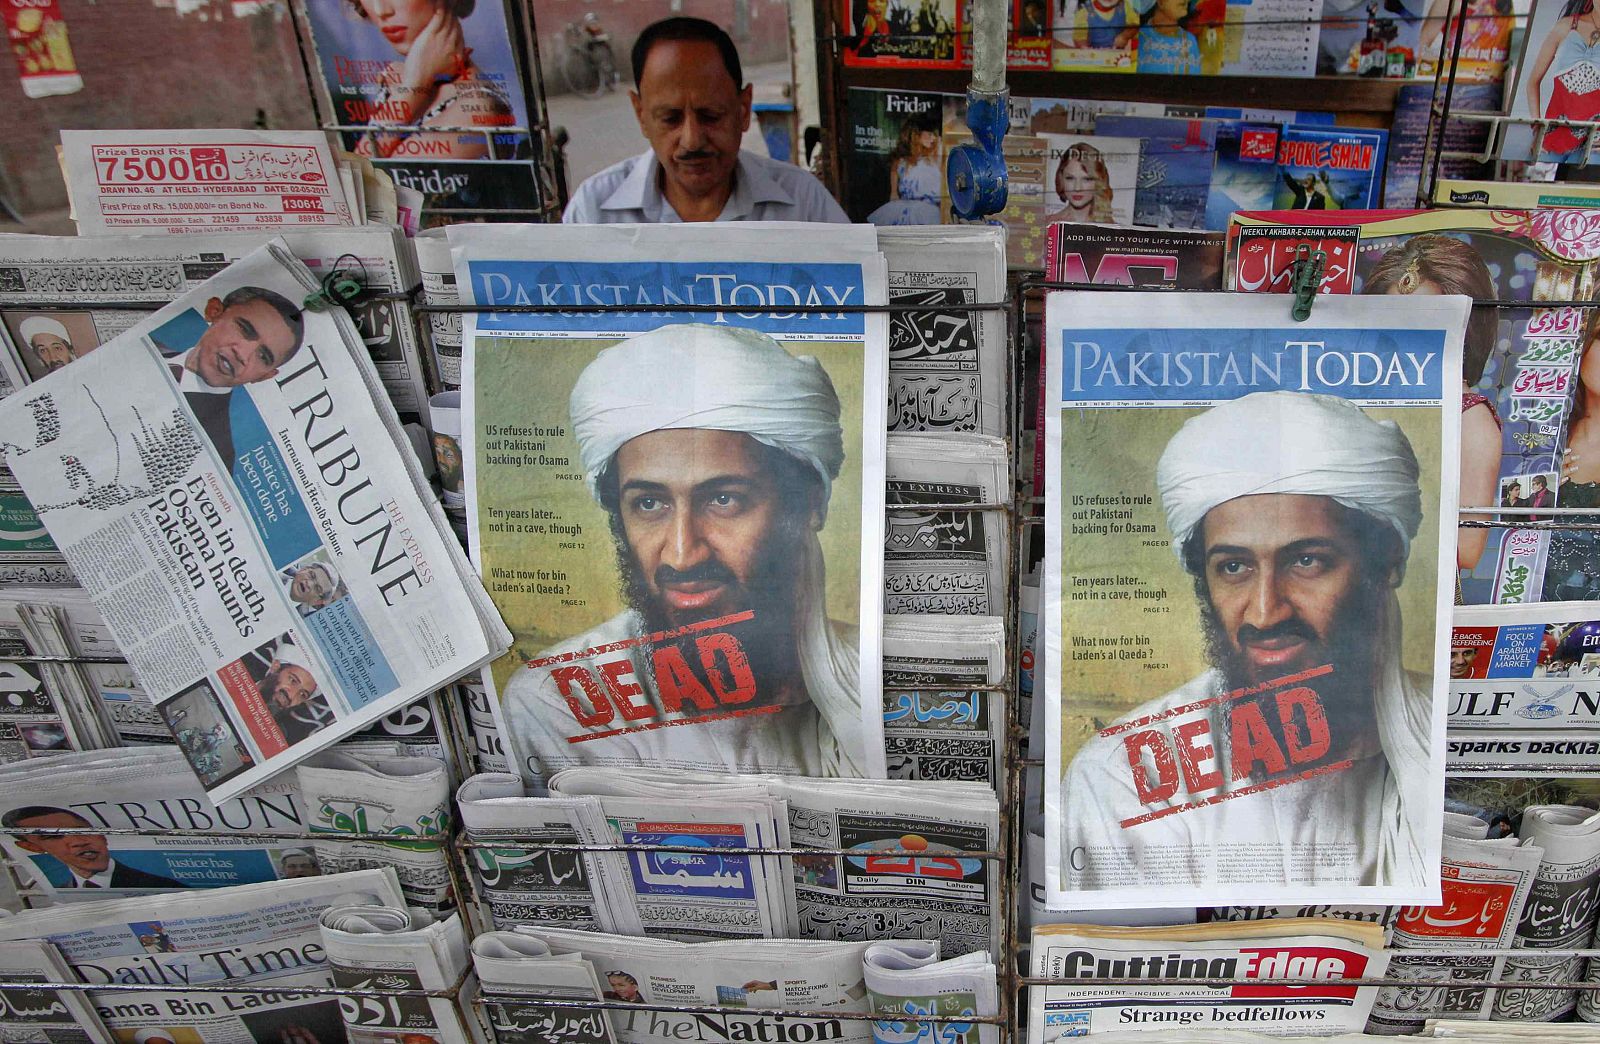 La prensa filtra poco poco nuevos detalles de la operación contra Bin Laden que contradicen la versión oficial.